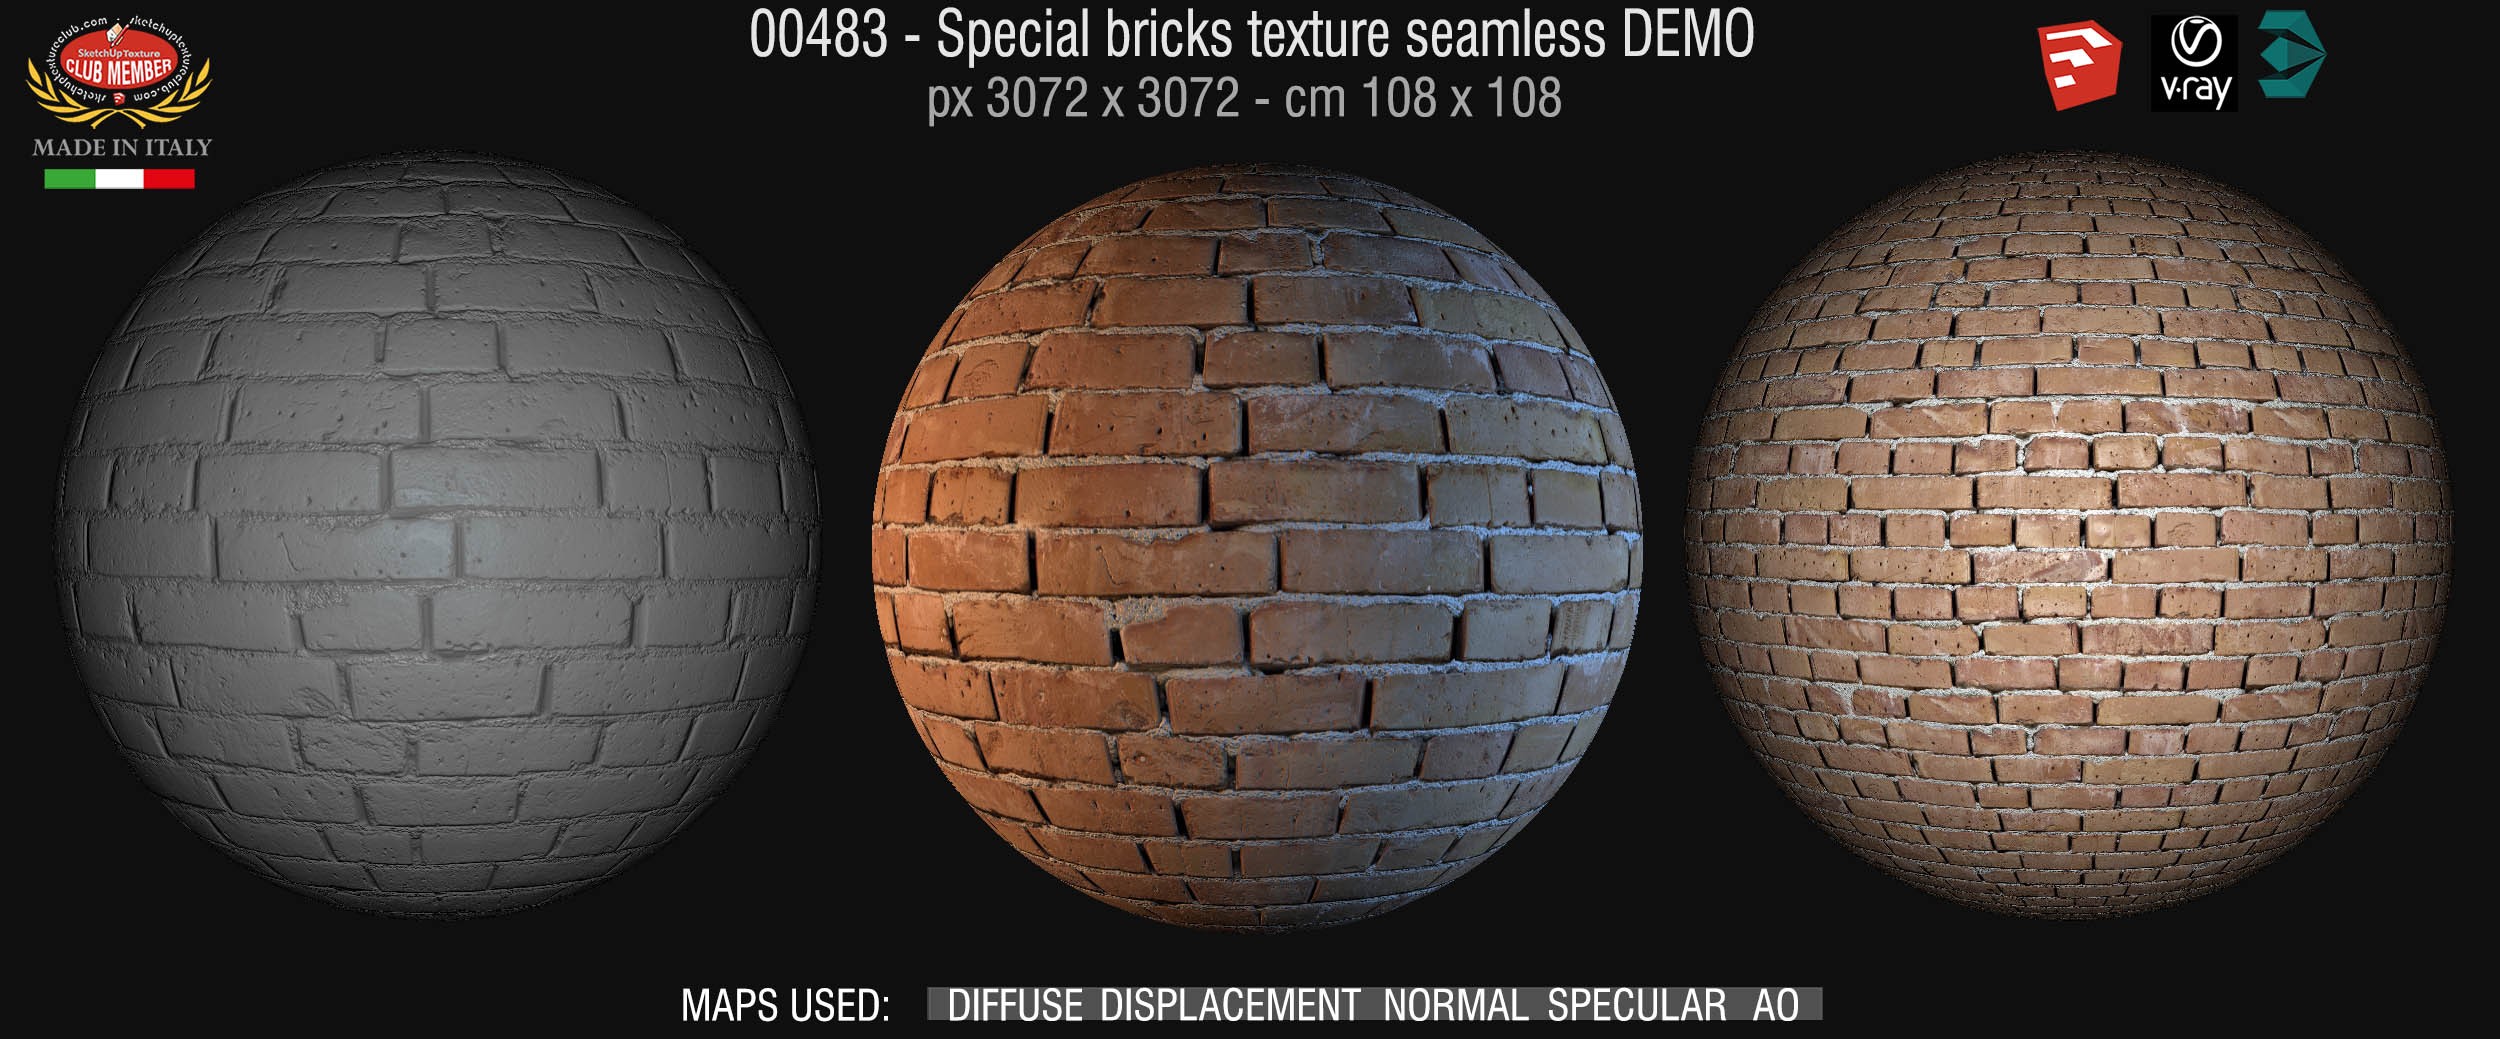 00483 Special bricks texture seamless + maps DEMO